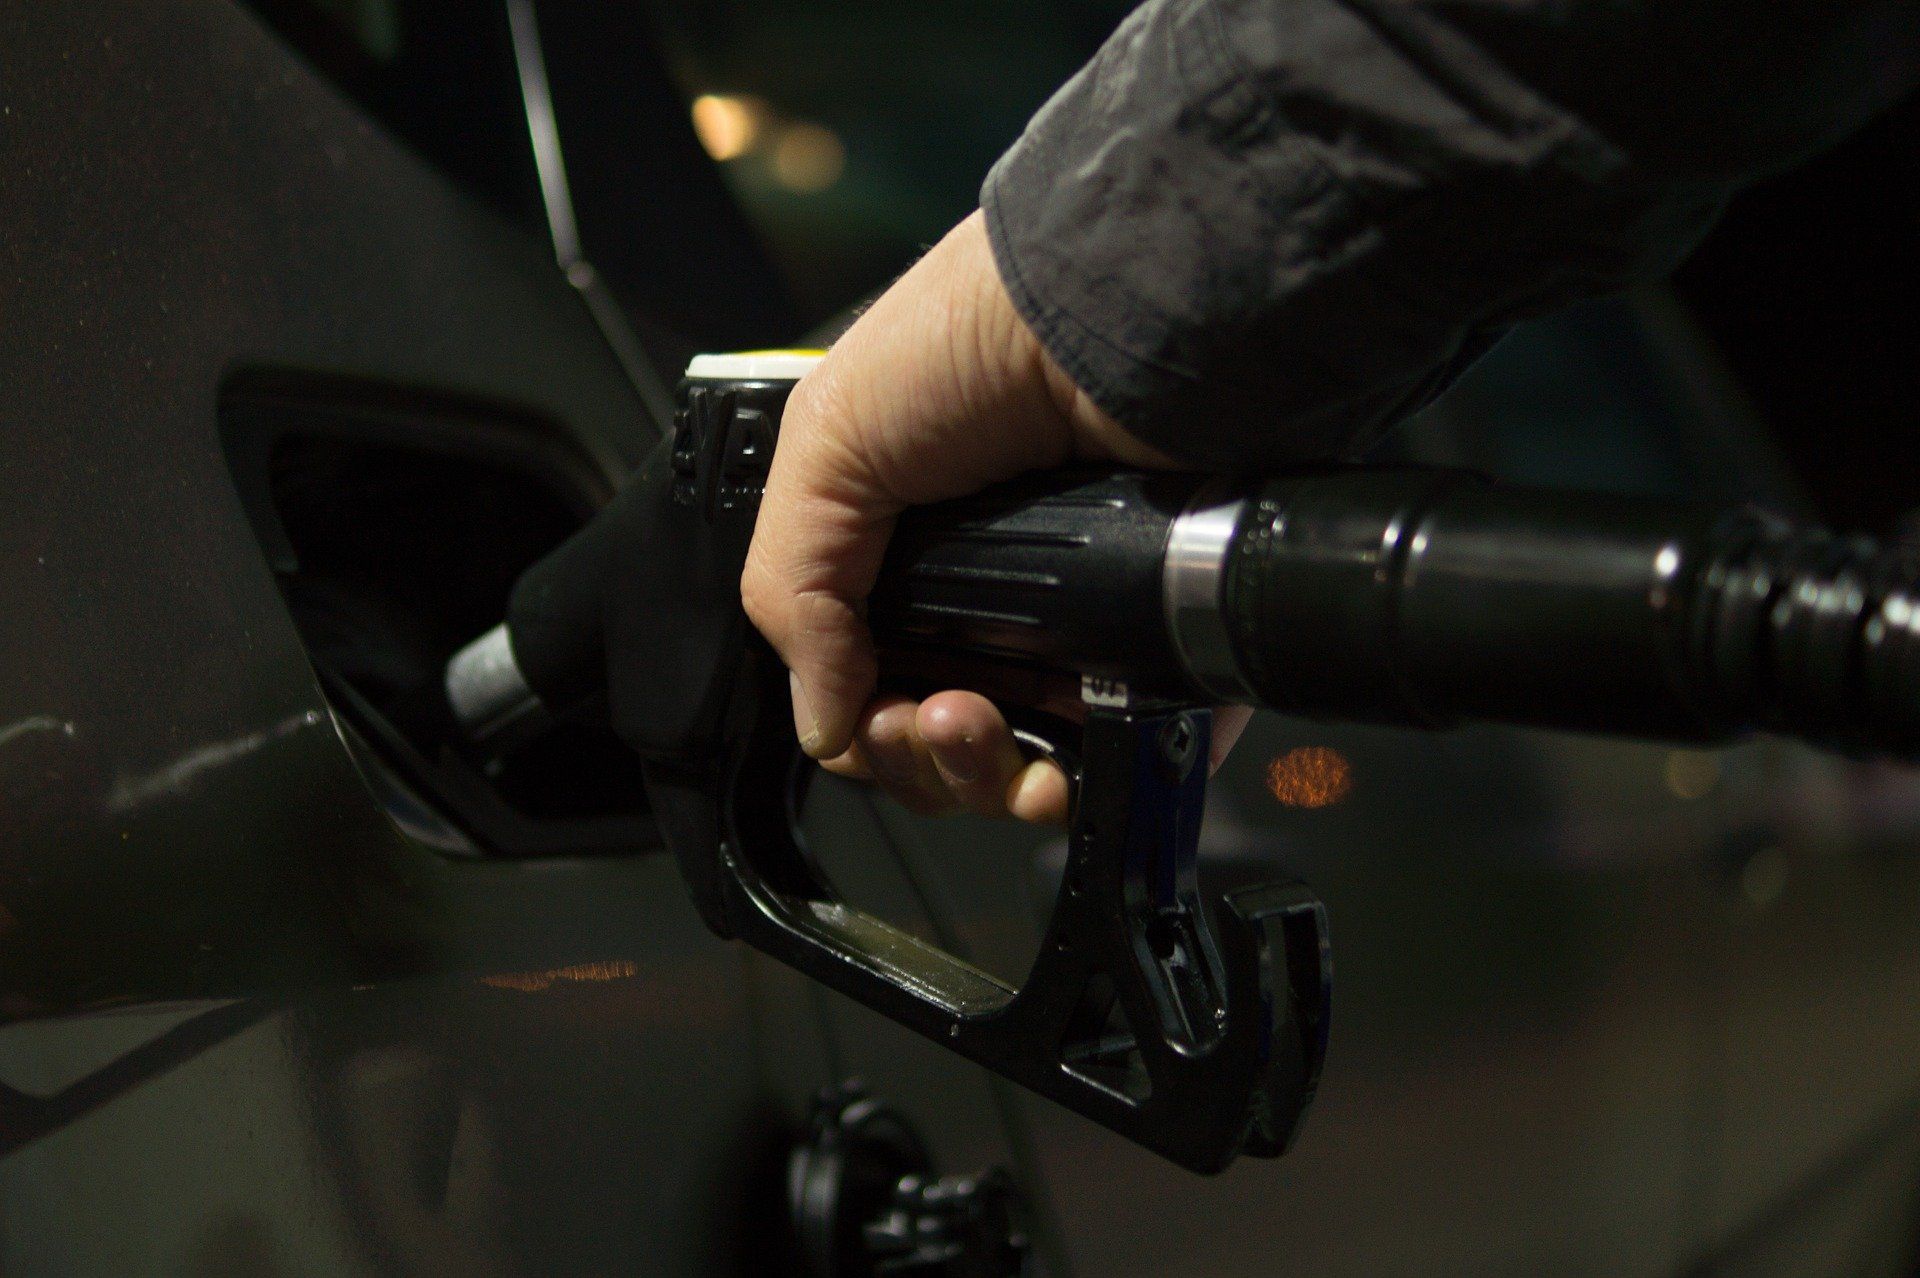 Fuel price June 14, 2022: Petrol Rs 96.72, diesel Rs 89.62 in Delhi